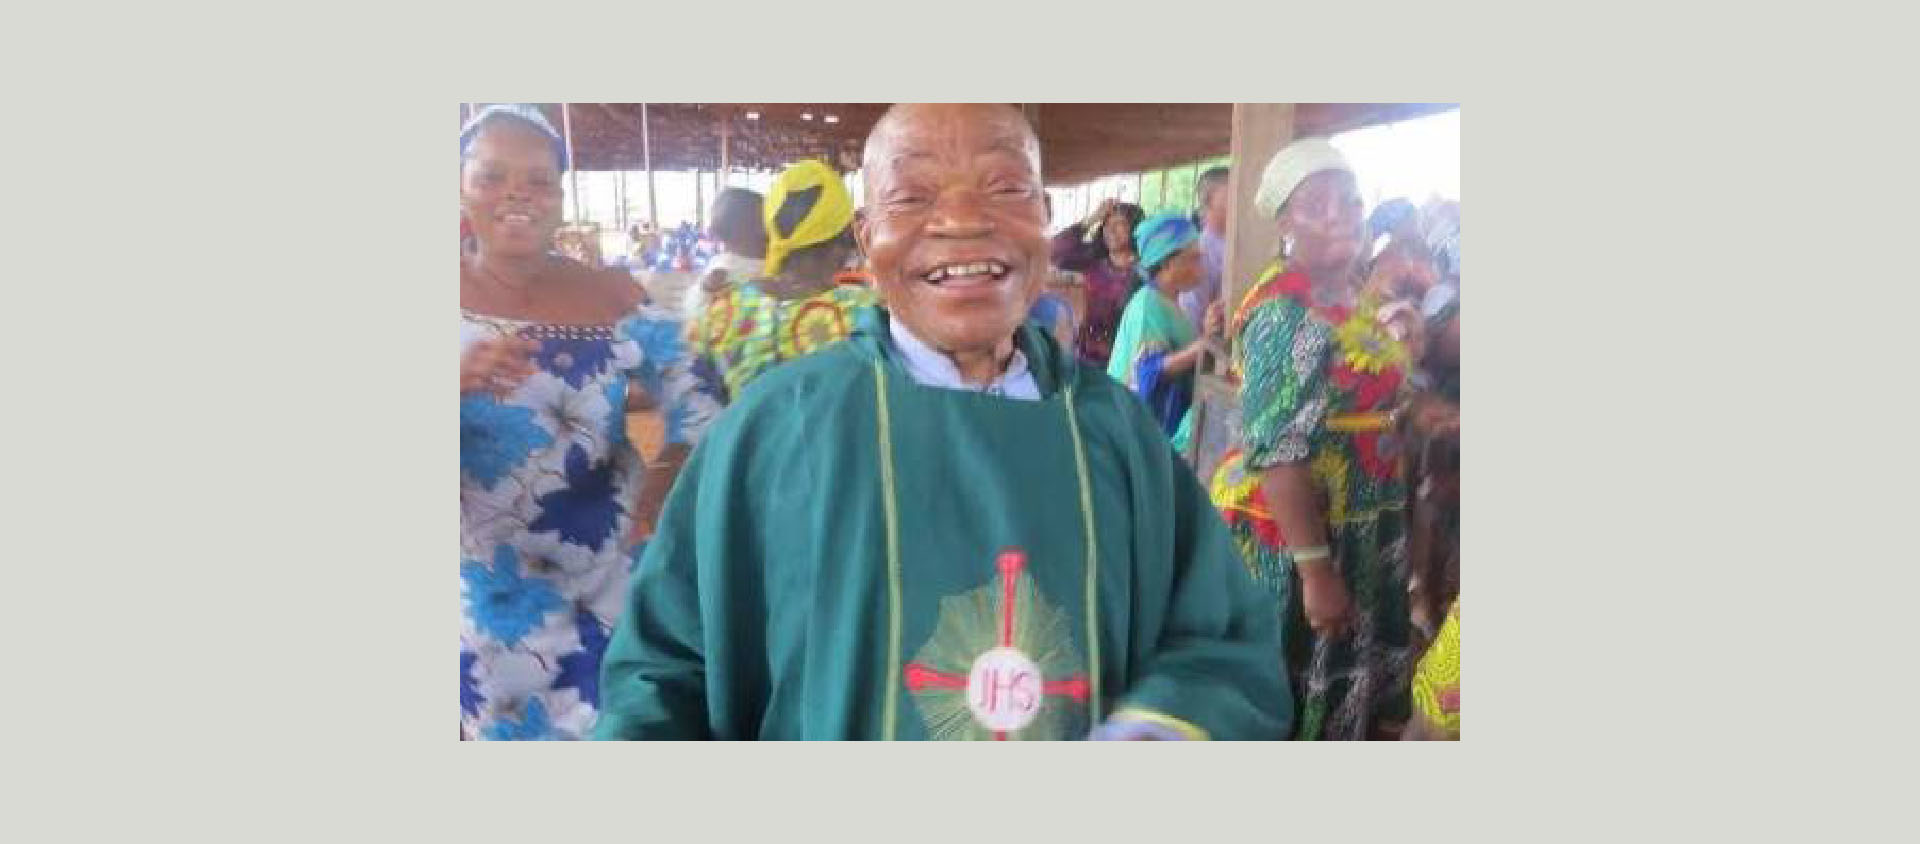 Le prêtre, enlevé le 15 mai, a été libéré le 23 mai, a annoncé le diocèse d'Onitsha | DR